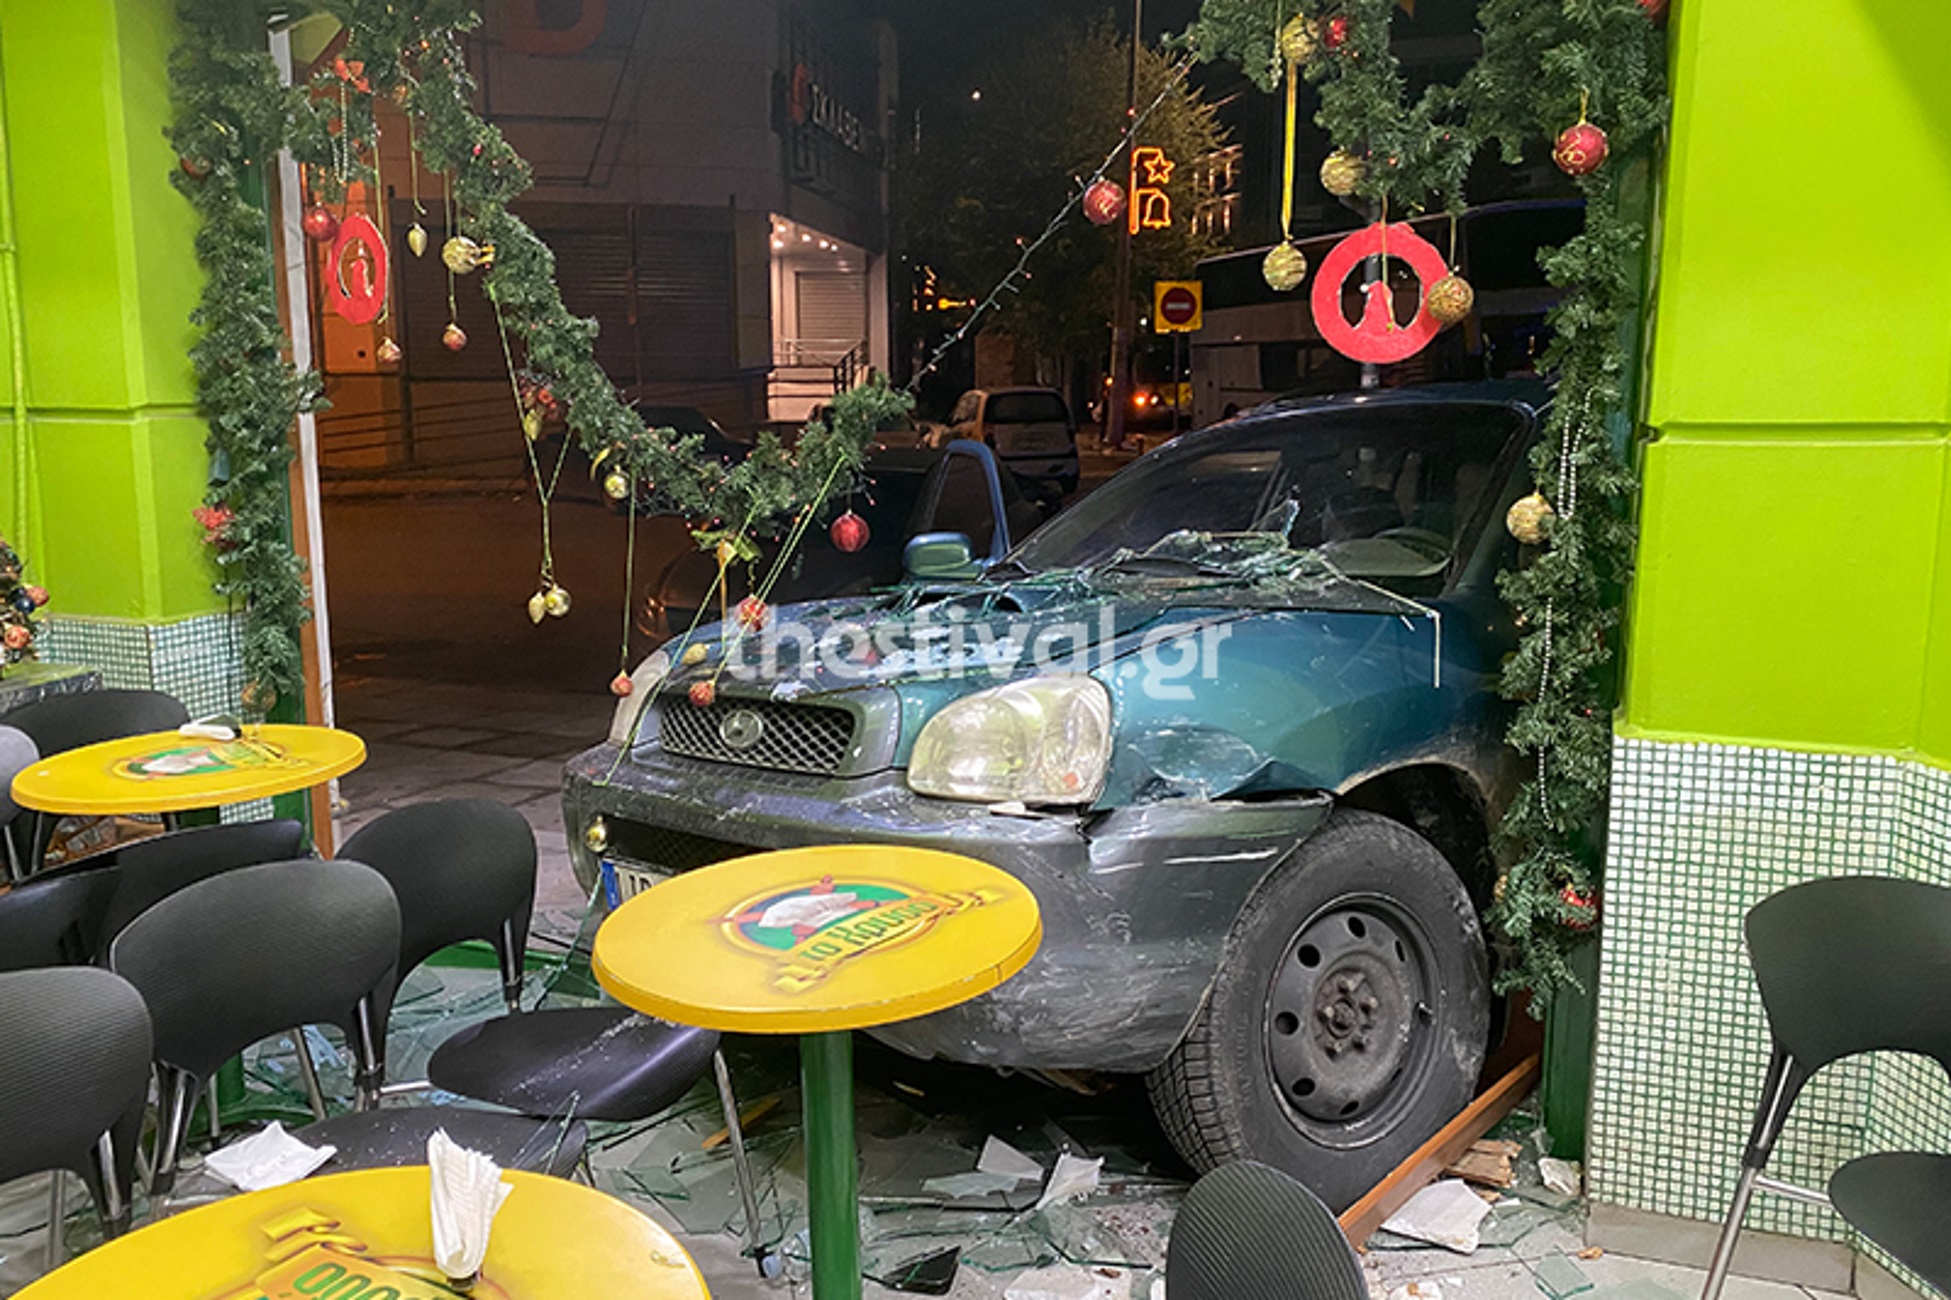 Θεσσαλονίκη: Αυτοκίνητο χωρίς οδηγό μπήκε σε μπουγατσάδικο που ήταν ανοιχτό μετά από τρελή καταδίωξη [pics, video]